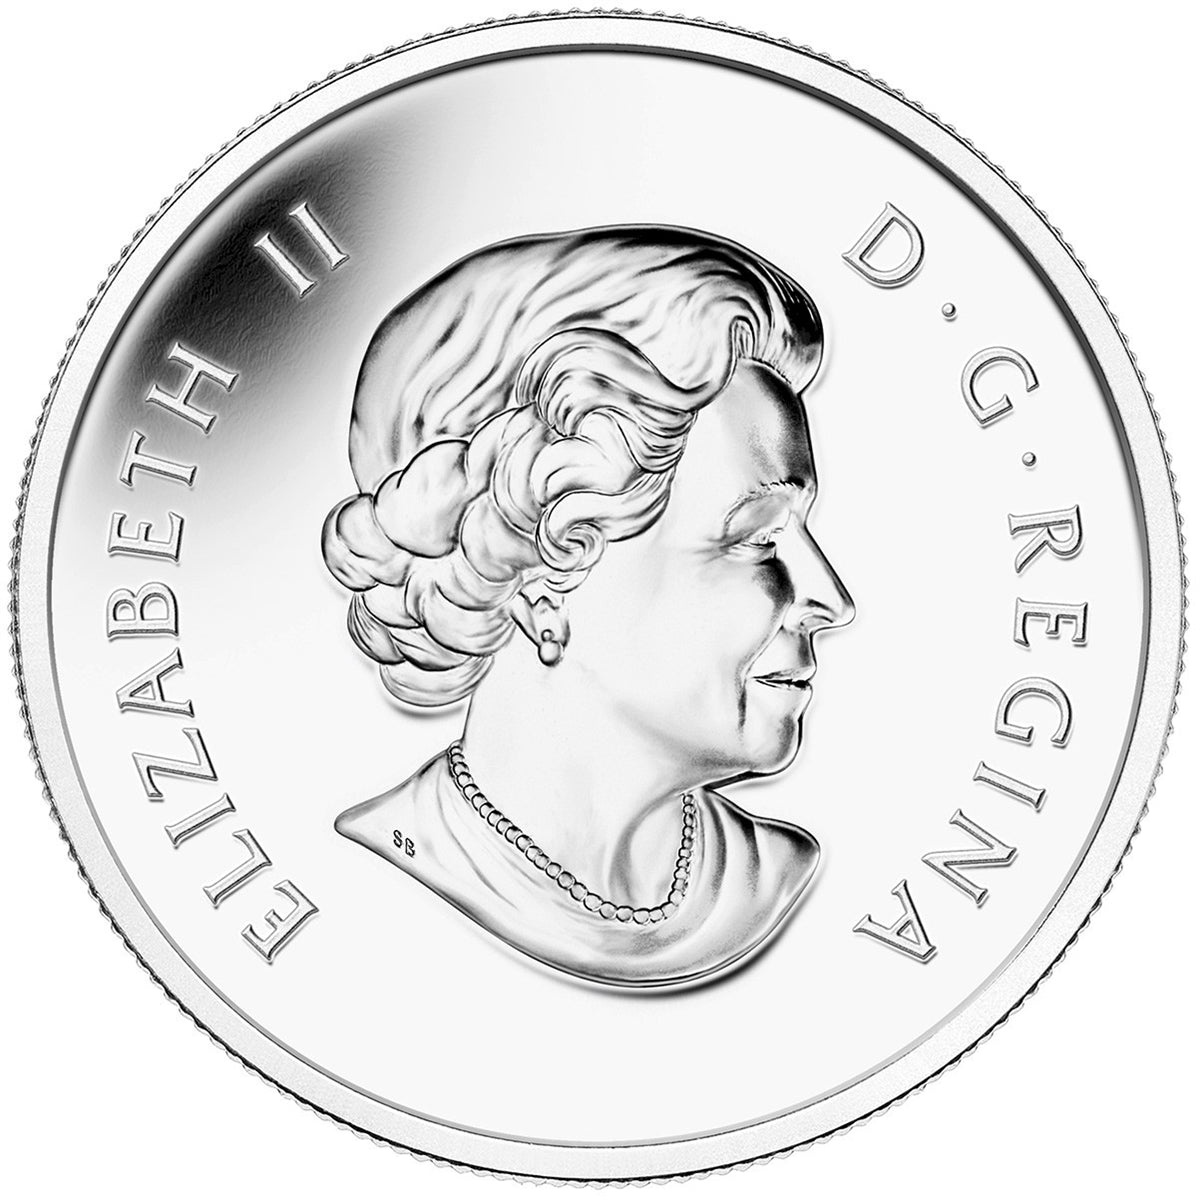 2015 Canada $10 Toronto Maple Leafs Fine Silver (No Tax)